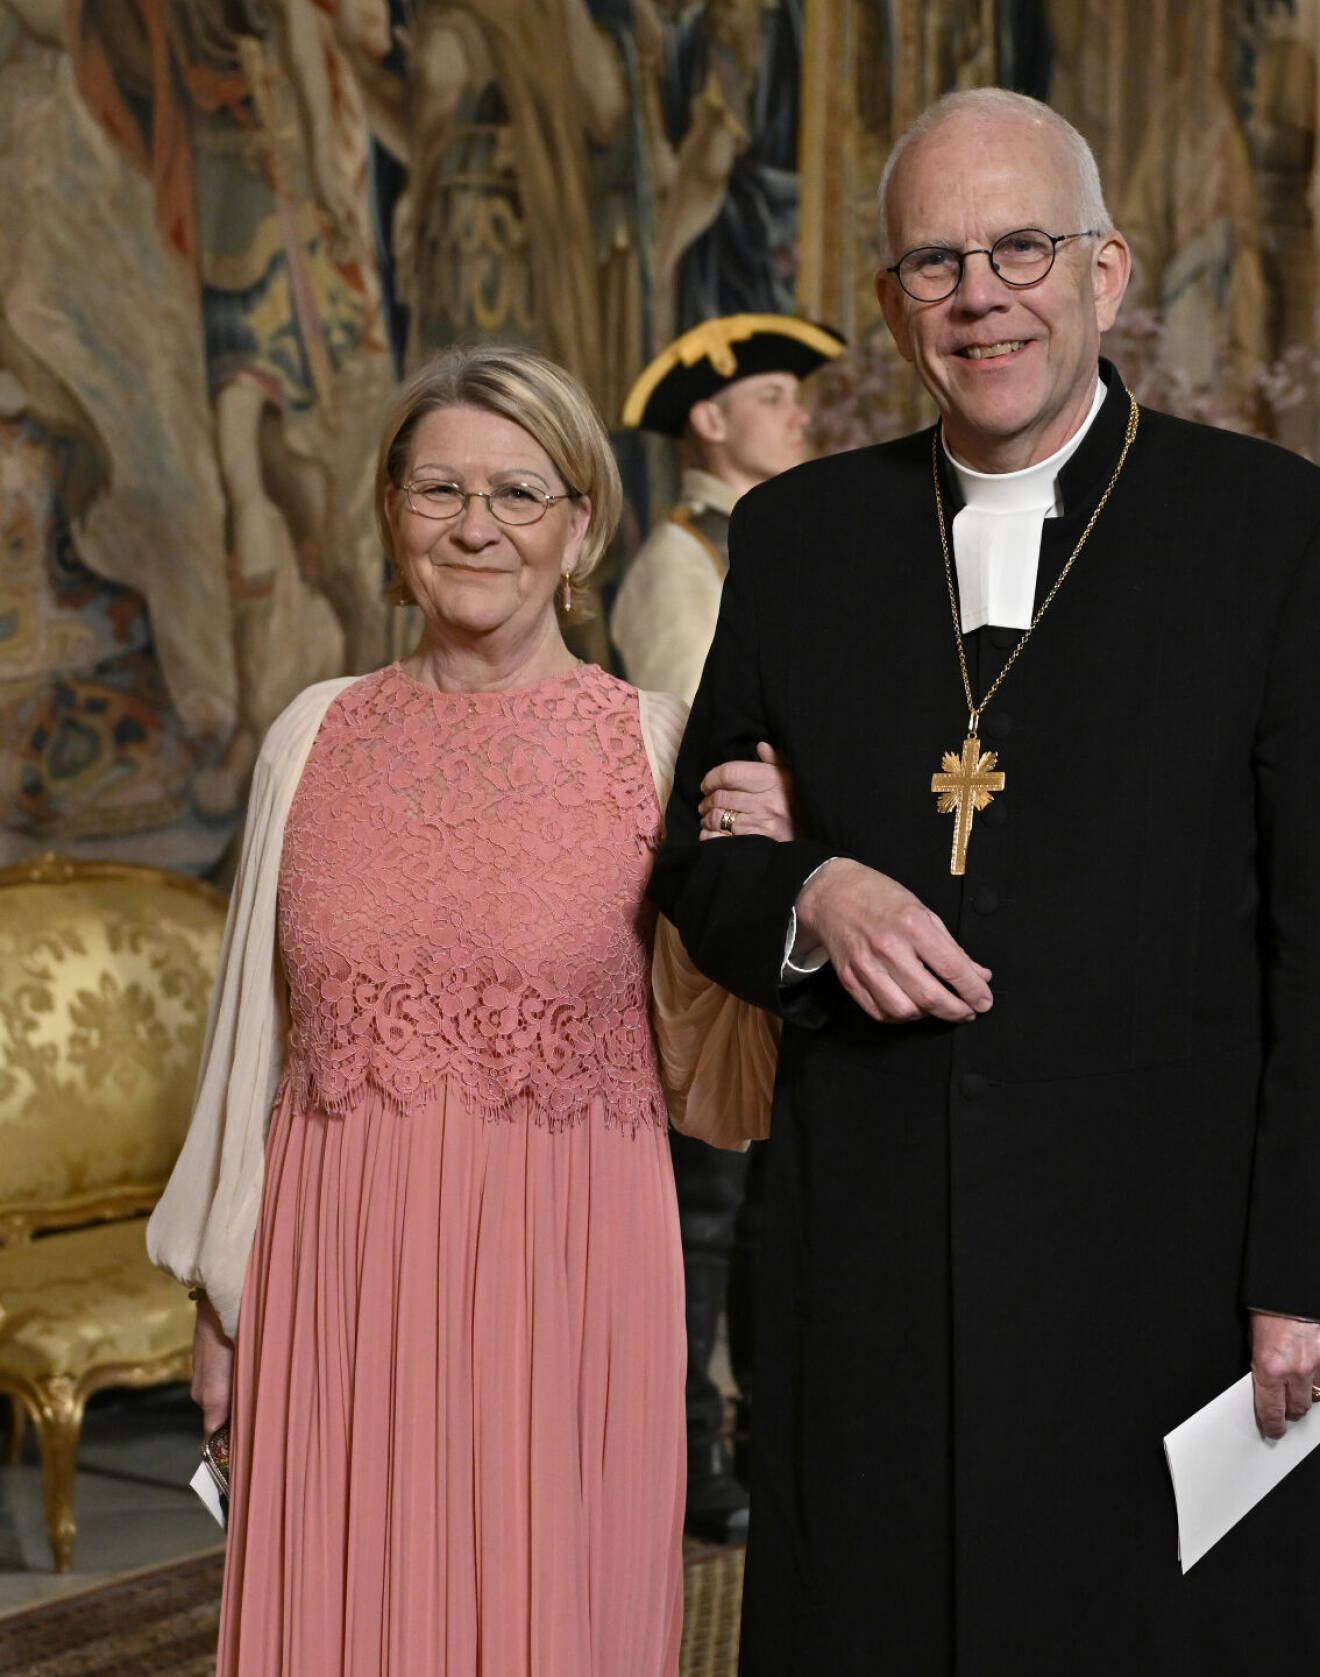 Ärkebiskop Martin Modéus och domkyrkopedagog Marianne Langby Modéus